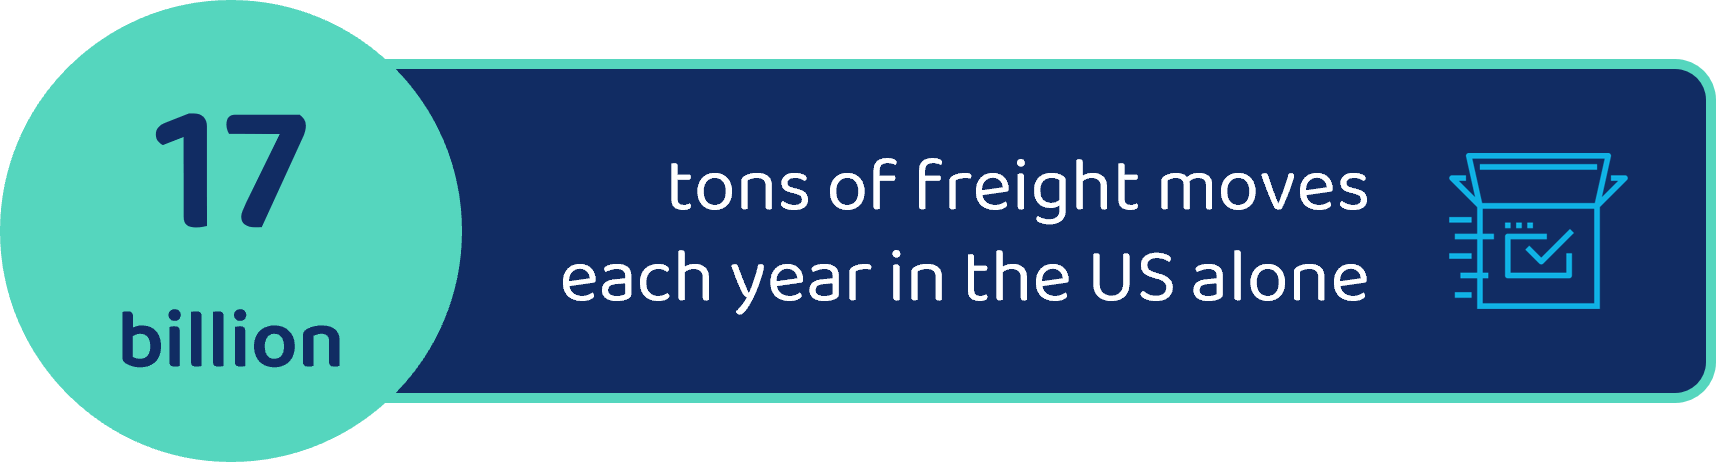 17-billion-tons-US-freight